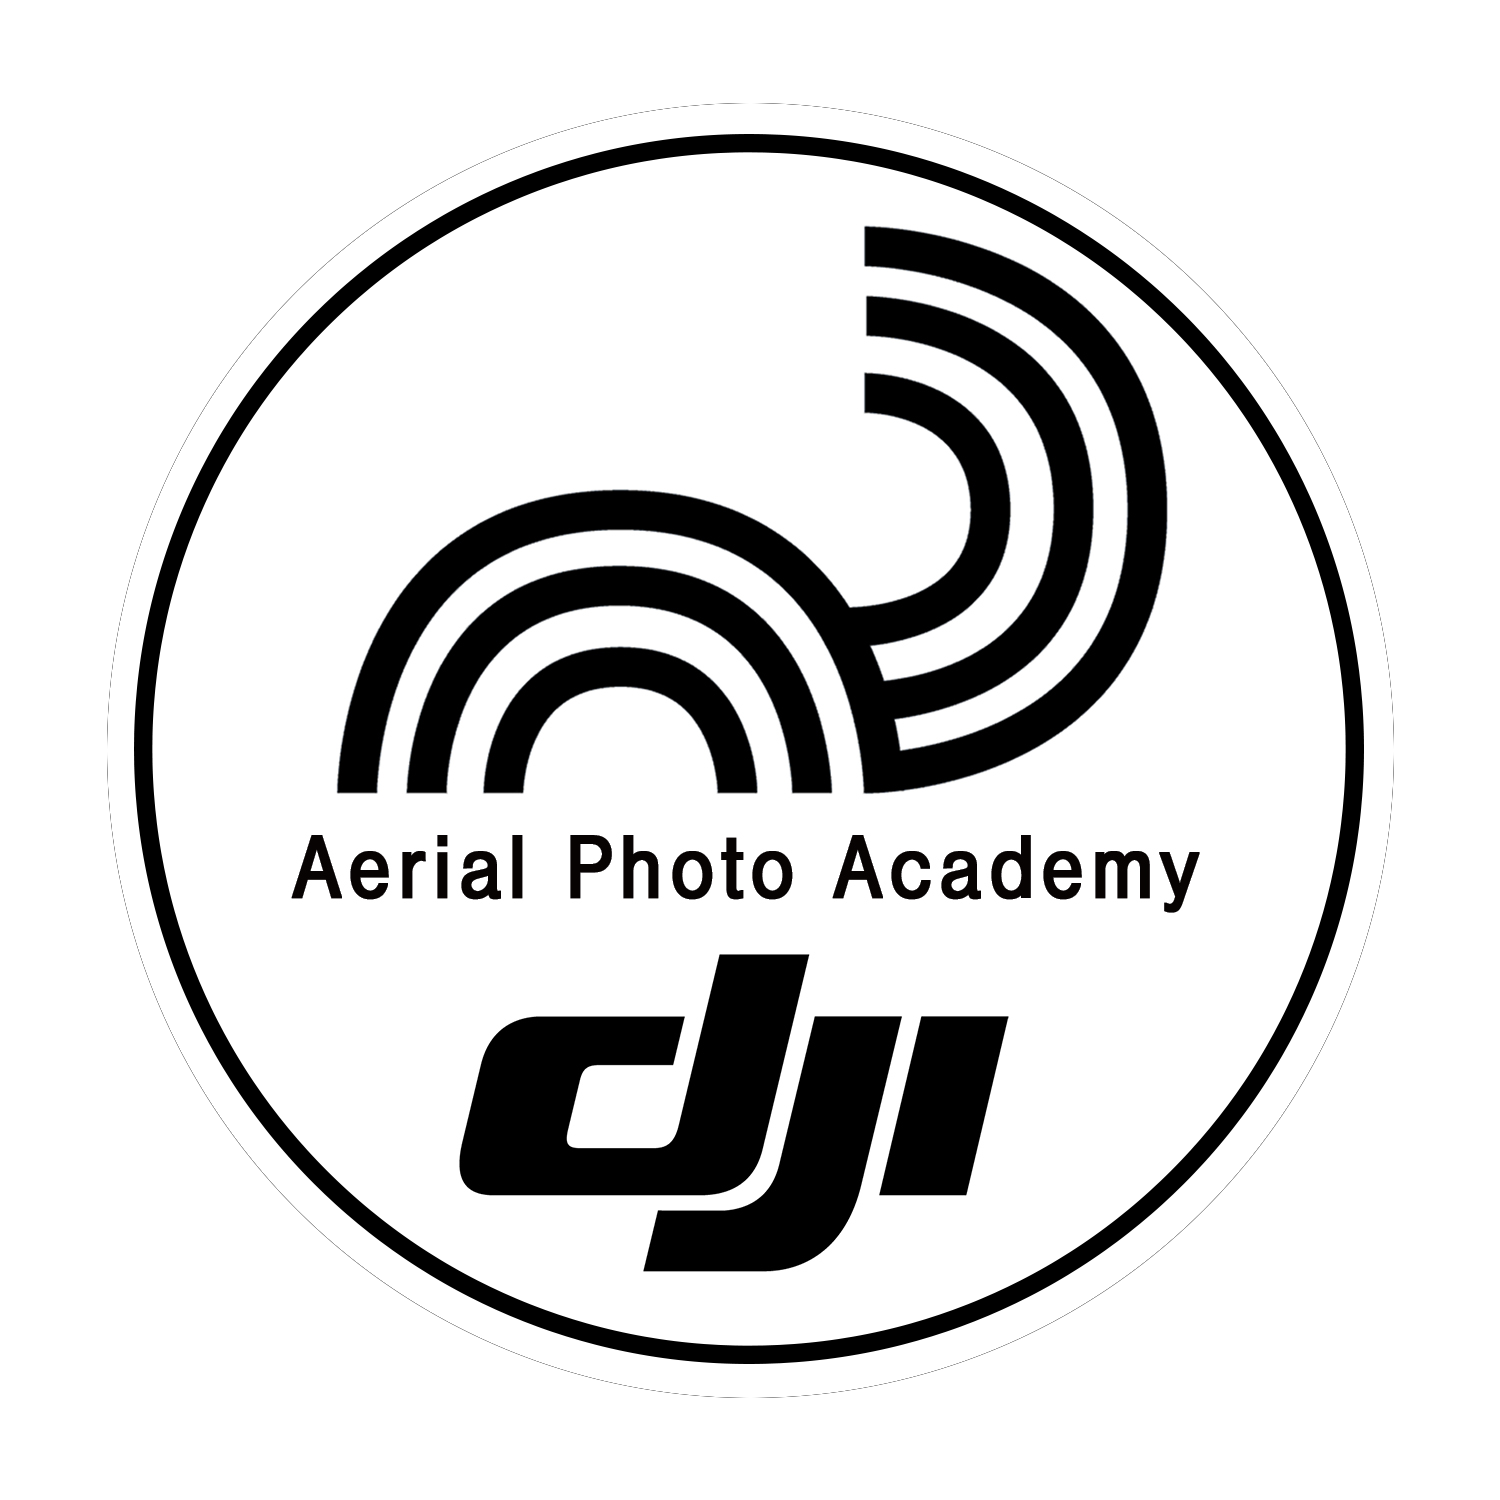 dji aerial photo academy